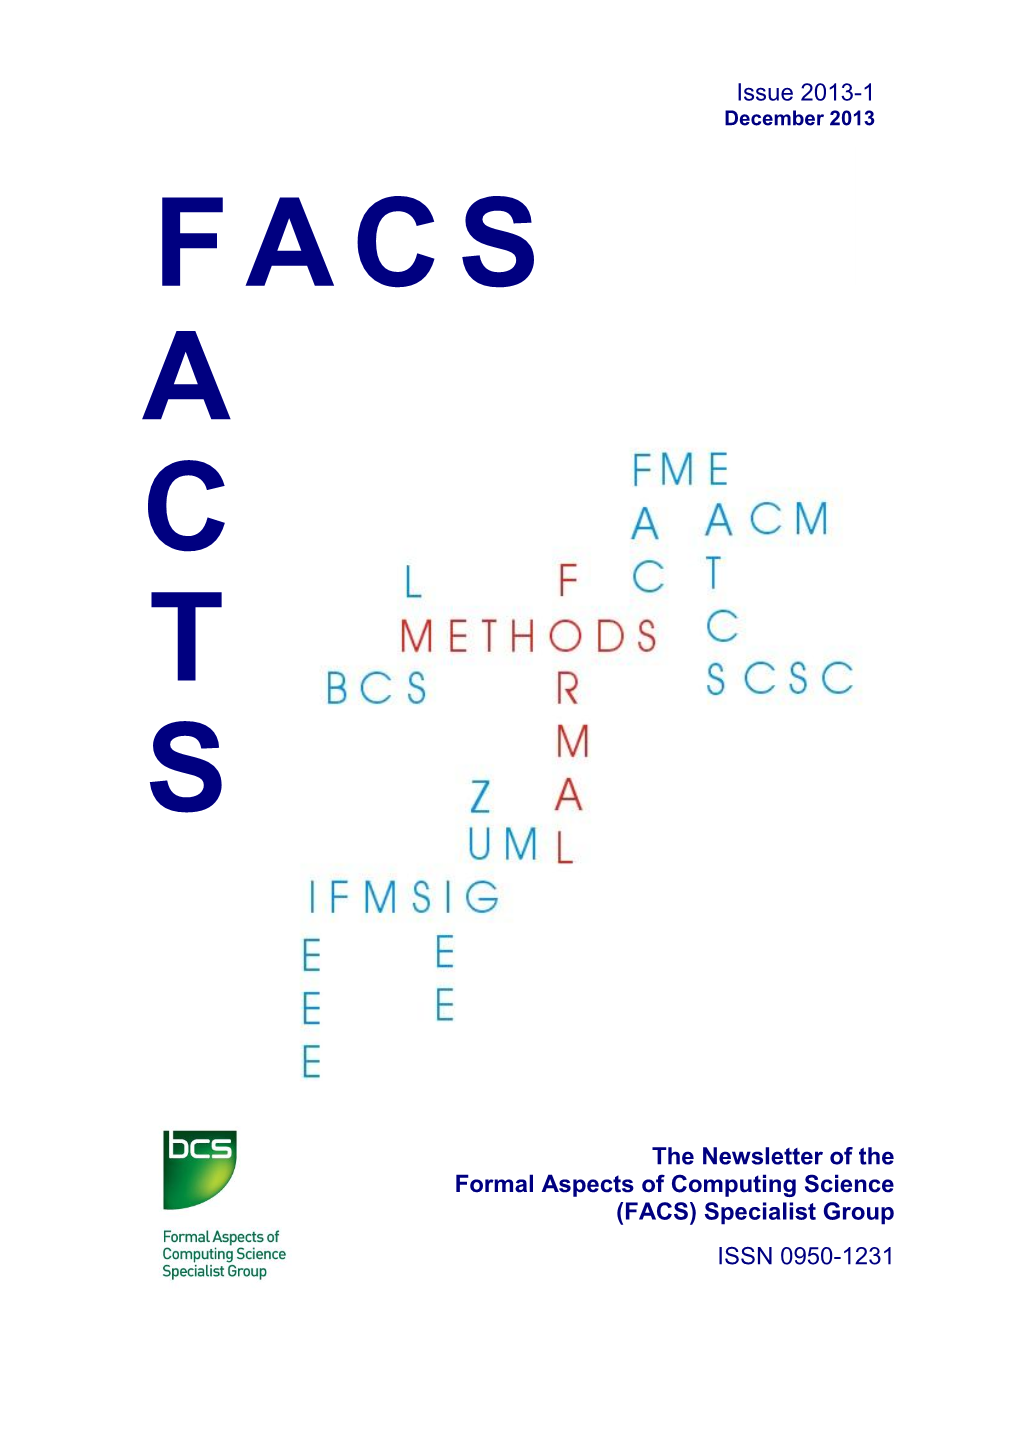 FACS FACTS Newsletter